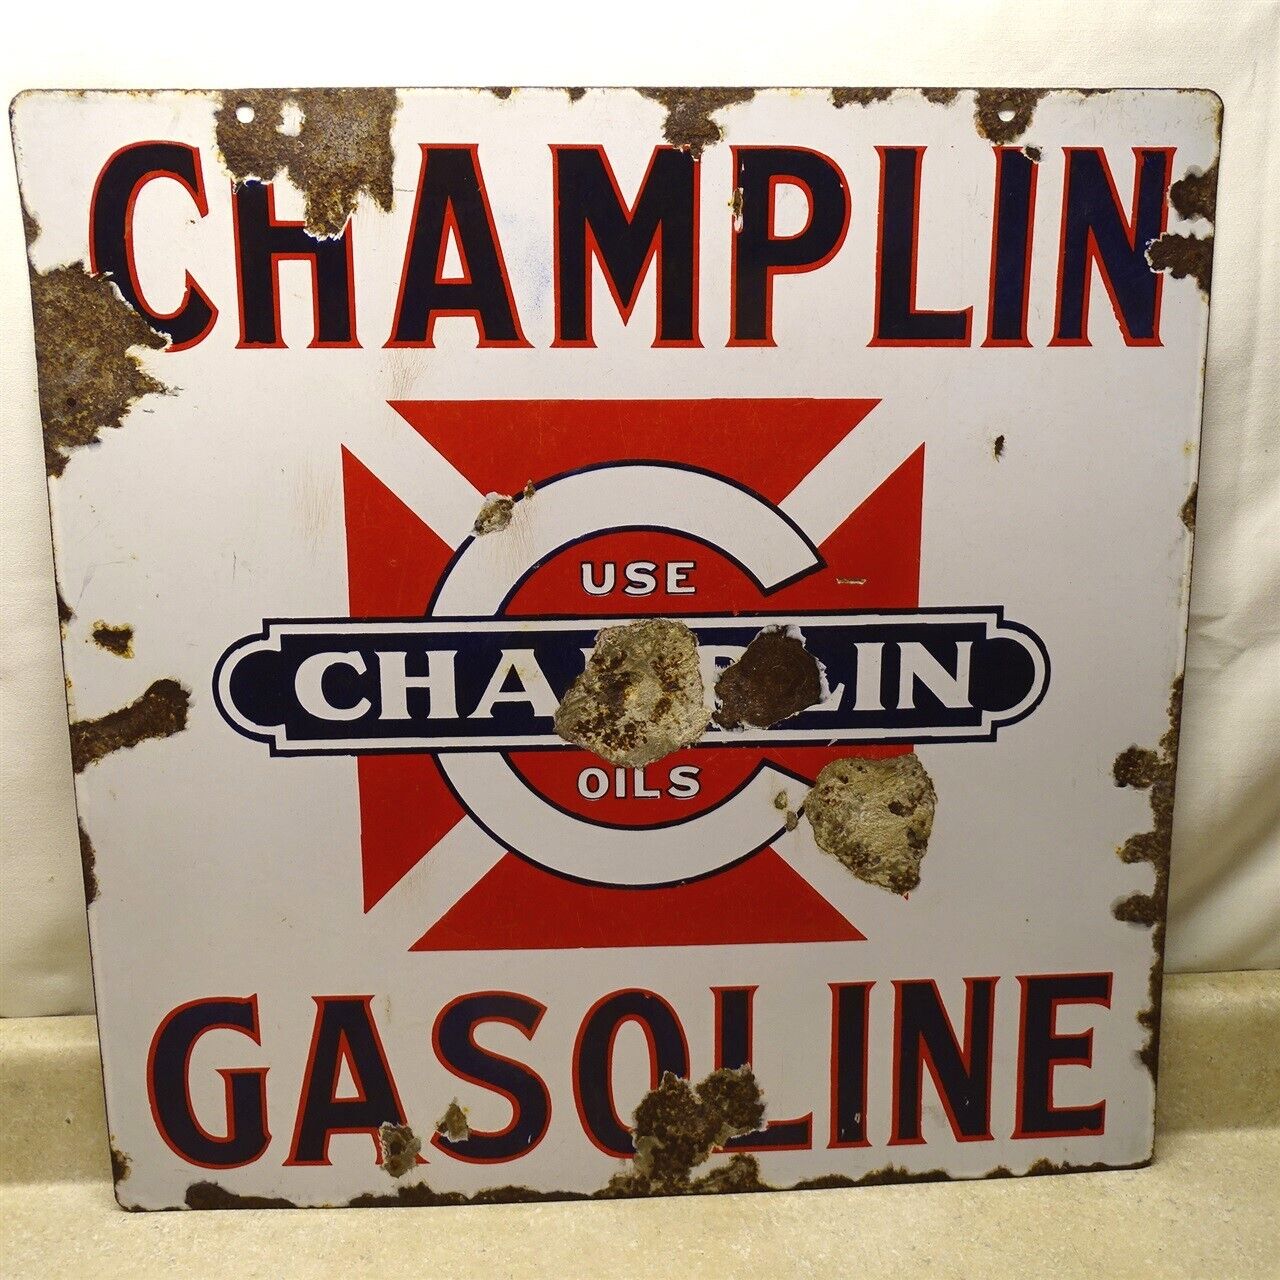  Vintage Use Champlin Oils Gasoline Porcelain Over Metal Sign, 24